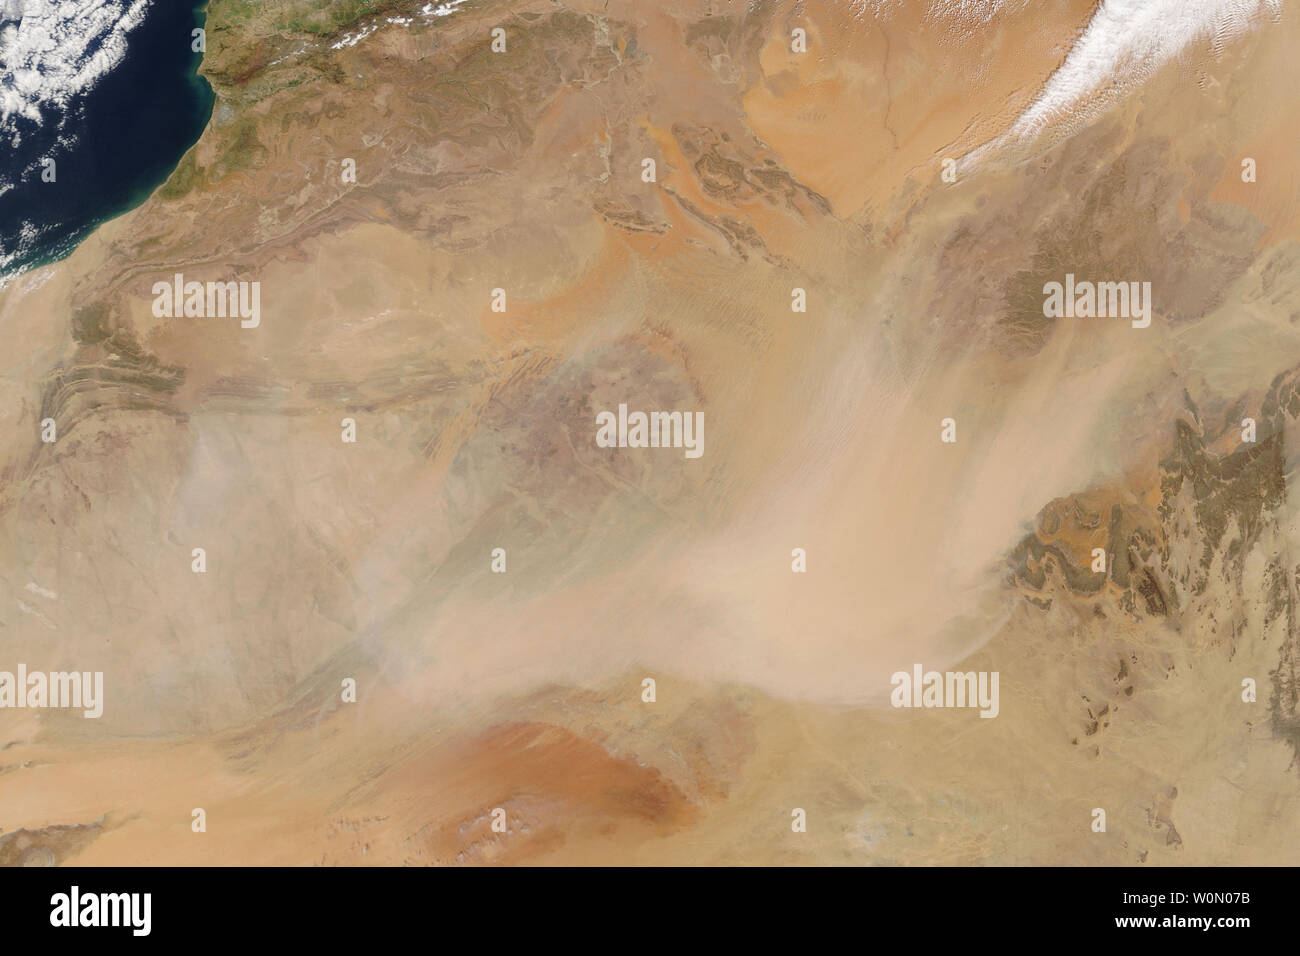 À la fin de mars 2018, l'Afrique du Nord ont subi un tourbillon de sable, avec de profondes répercussions. La poussière du Sahara vers le nord, vers l'Europe la semaine dernière, les pistes de ski de revêtement et les villes méditerranéennes en particules d'orange. S'il y a souvent une certaine quantité de poussière d'être soufflé autour de l'Afrique du Nord, l'activité récente a comparu pour prendre (telle que vue par satellite) le 21 mars 2018, lorsque le spectromètre imageur à résolution moyenne (MODIS) sur le satellite Terra de la NASA a acquis cette image. Même selon les normes de l'intérieur du désert de l'Afrique, les tempêtes de la fin de mars ont été intenses. Les écoles et les aéroports Banque D'Images